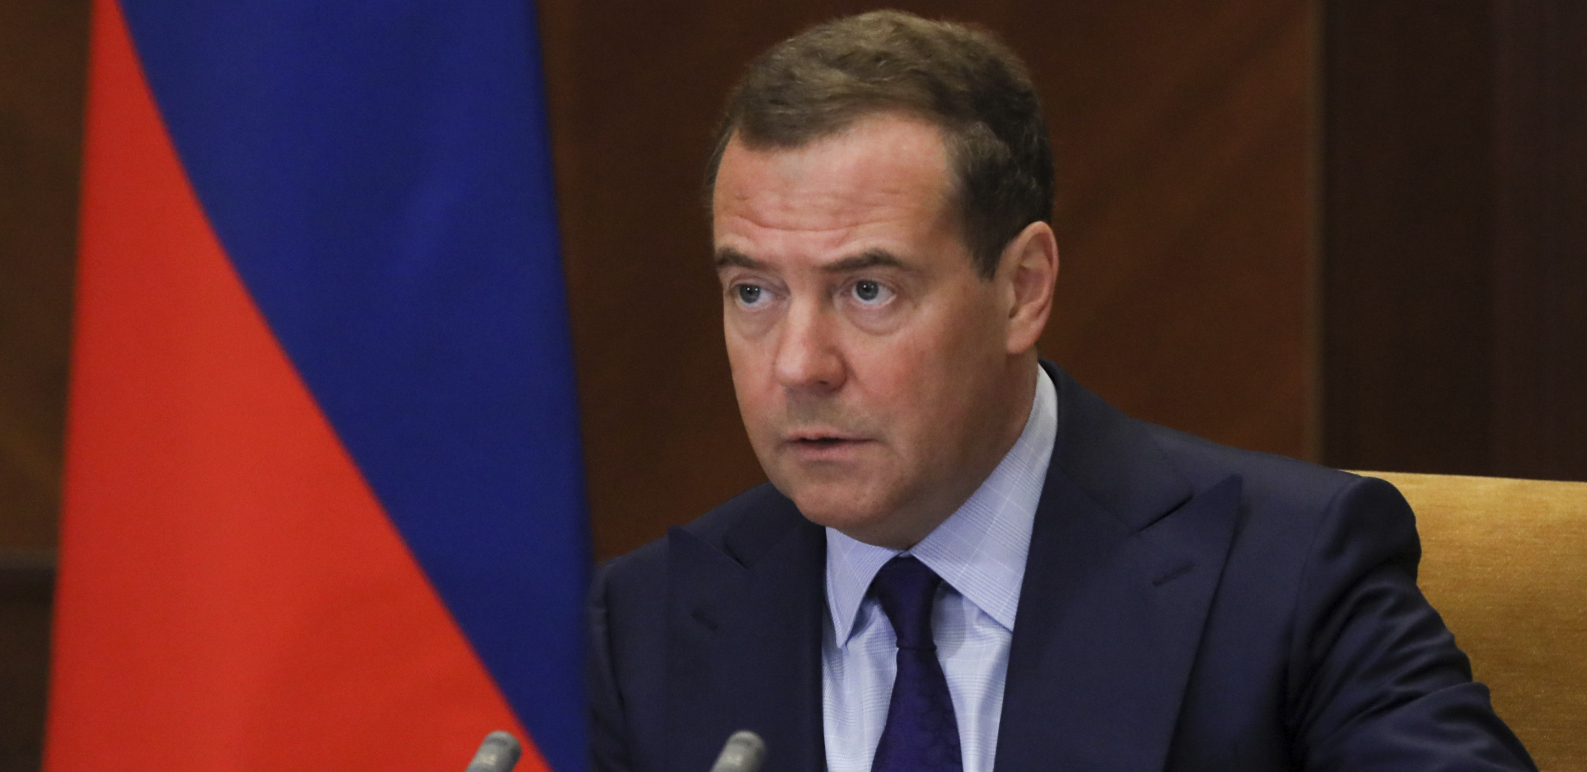 "ZAPADNI SAVEZ PRESTAĆE DA POSTOJI!" Medvedev upozorava šta čeka građane Evrope